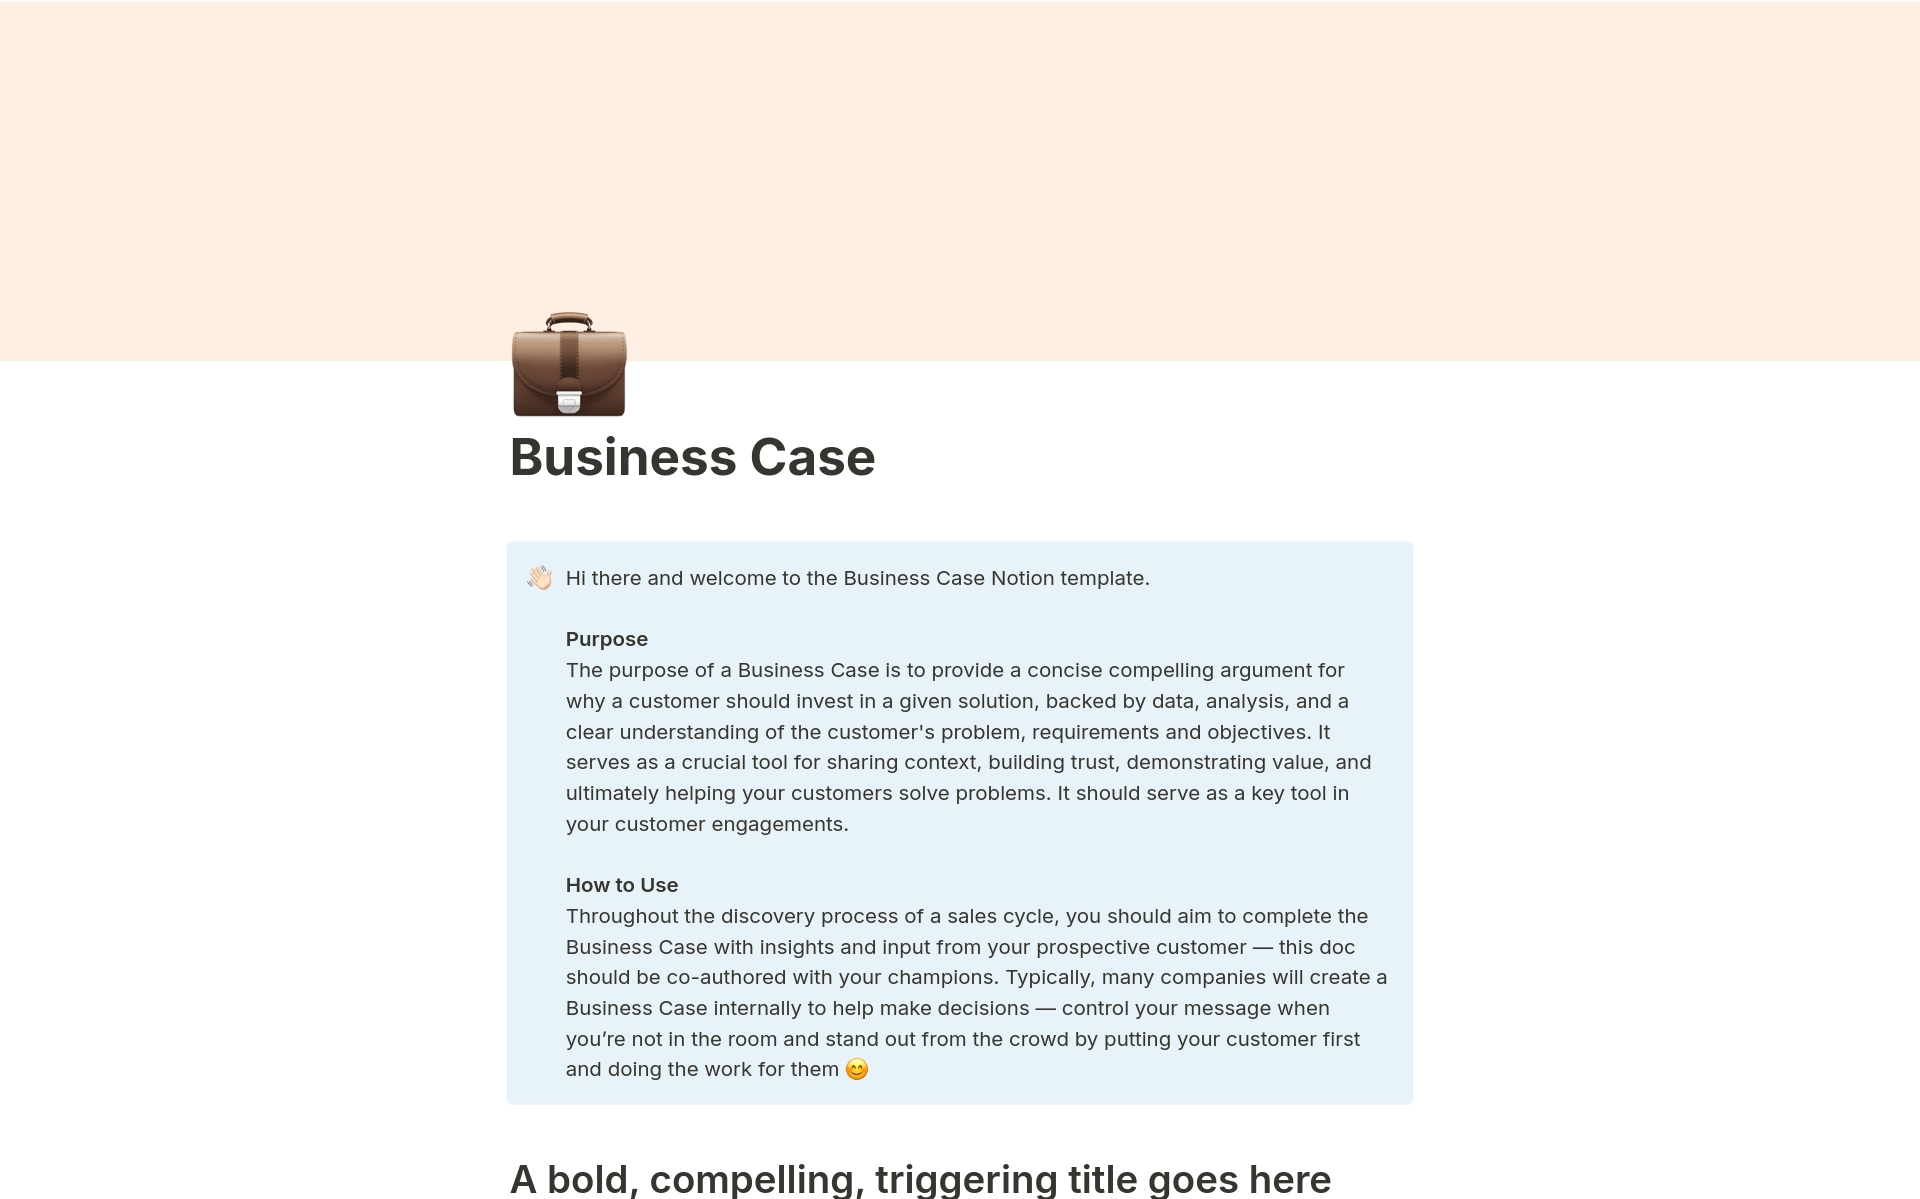 Aperçu du modèle de Business Case